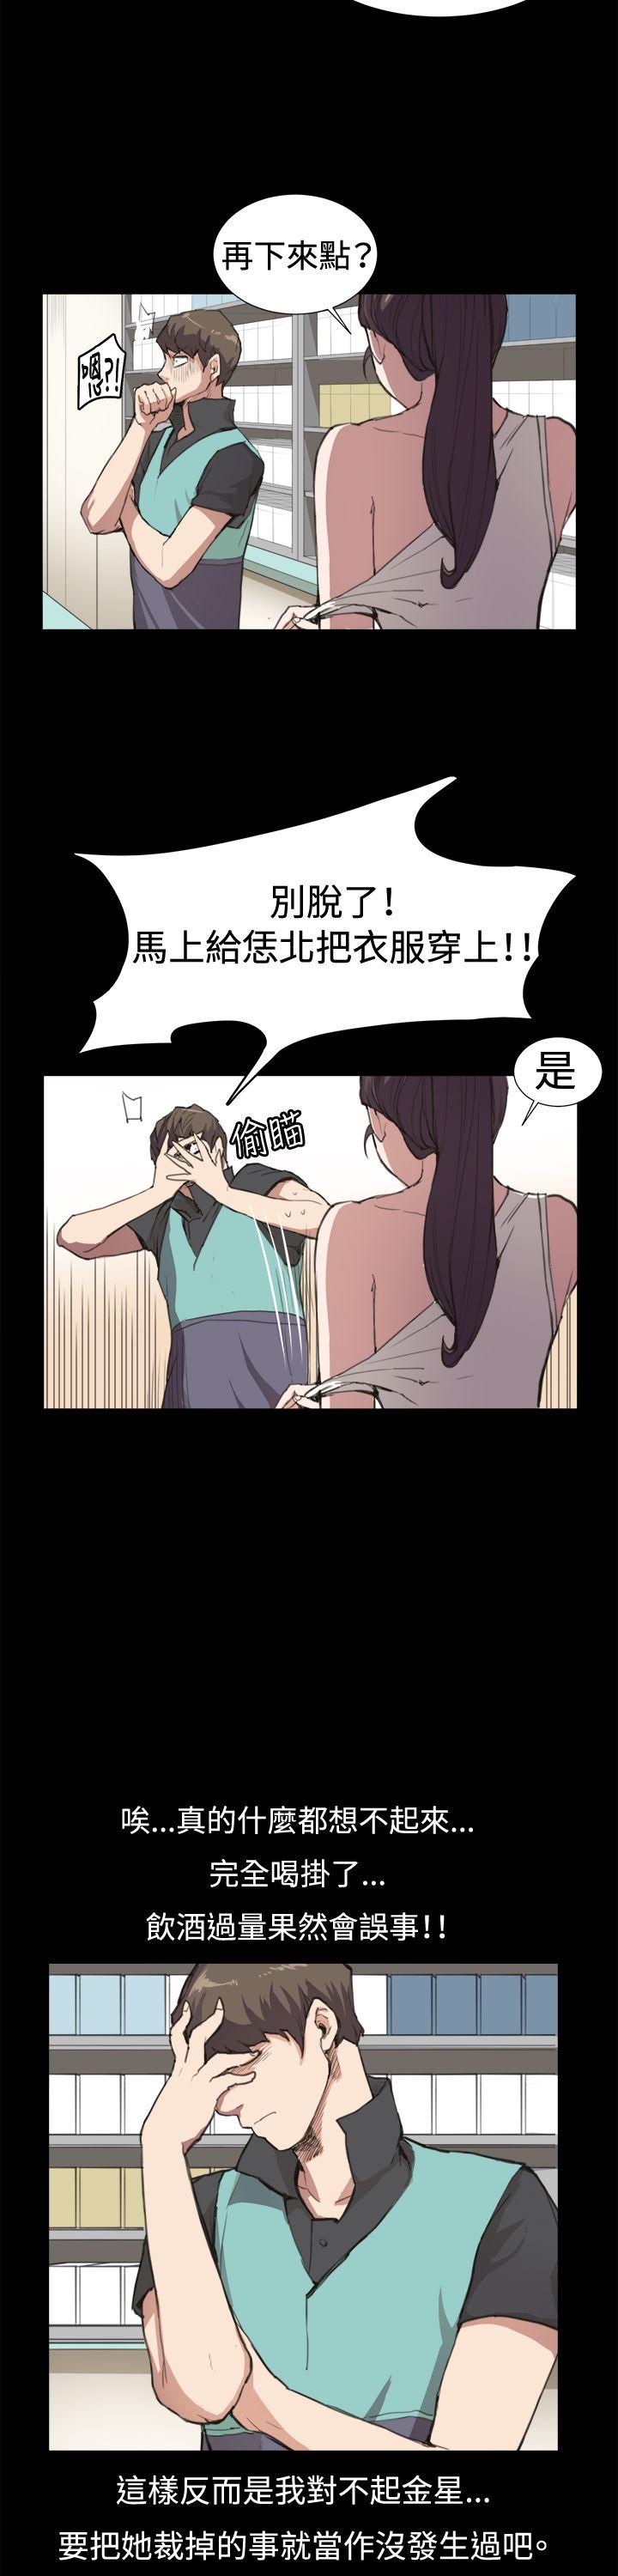 韩国污漫画 深夜便利店 第6话 27